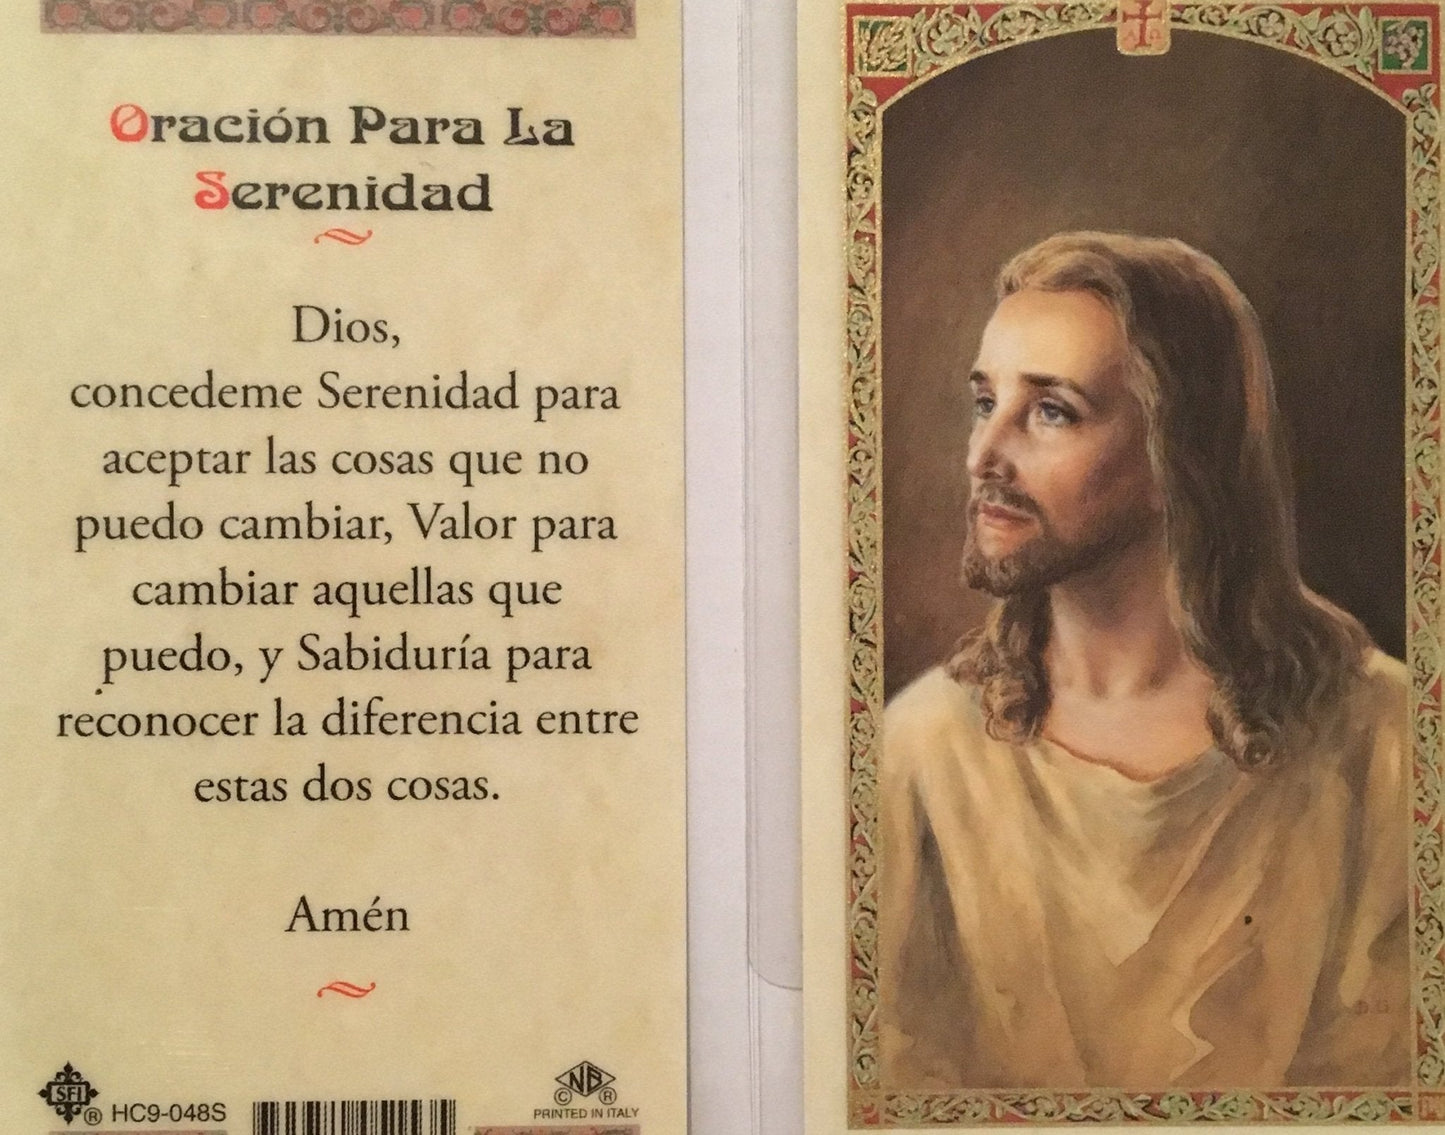 Prayer Card Oracion Para La Serenidad SPANISH Laminated HC9-048S - Ysleta Mission Gift Shop- VOTED El Paso's Best Gift Shop